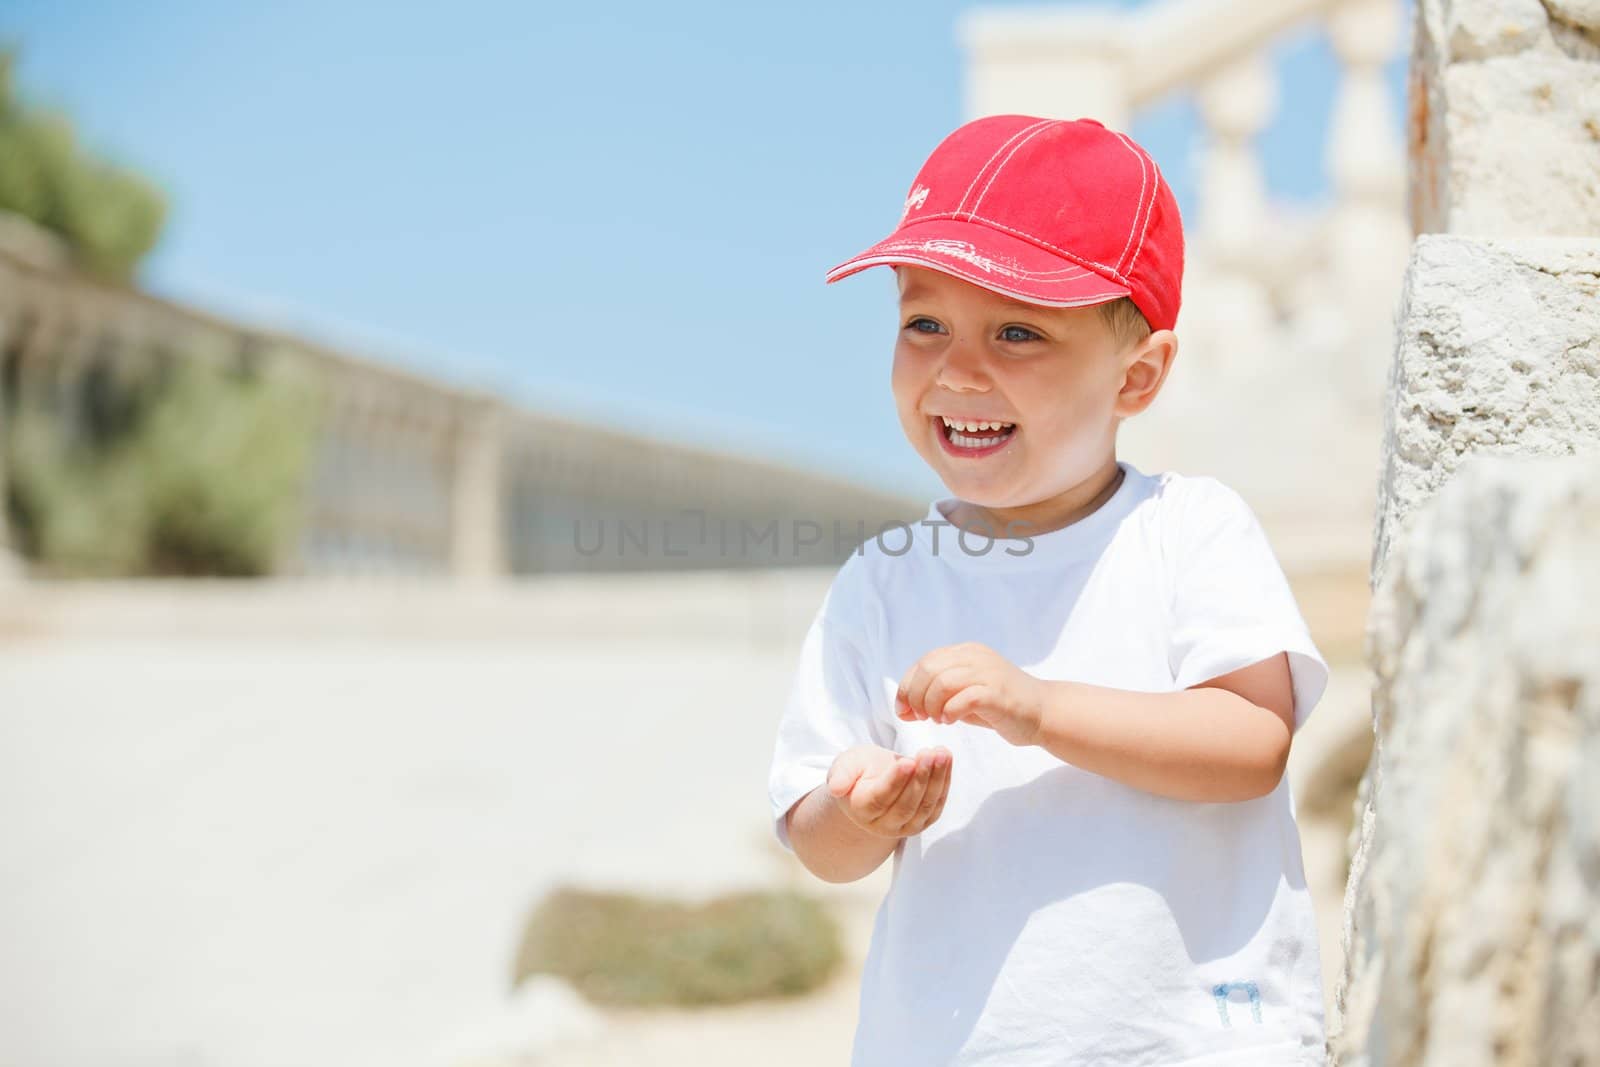 A close-up portrait of cute boy in a red cap